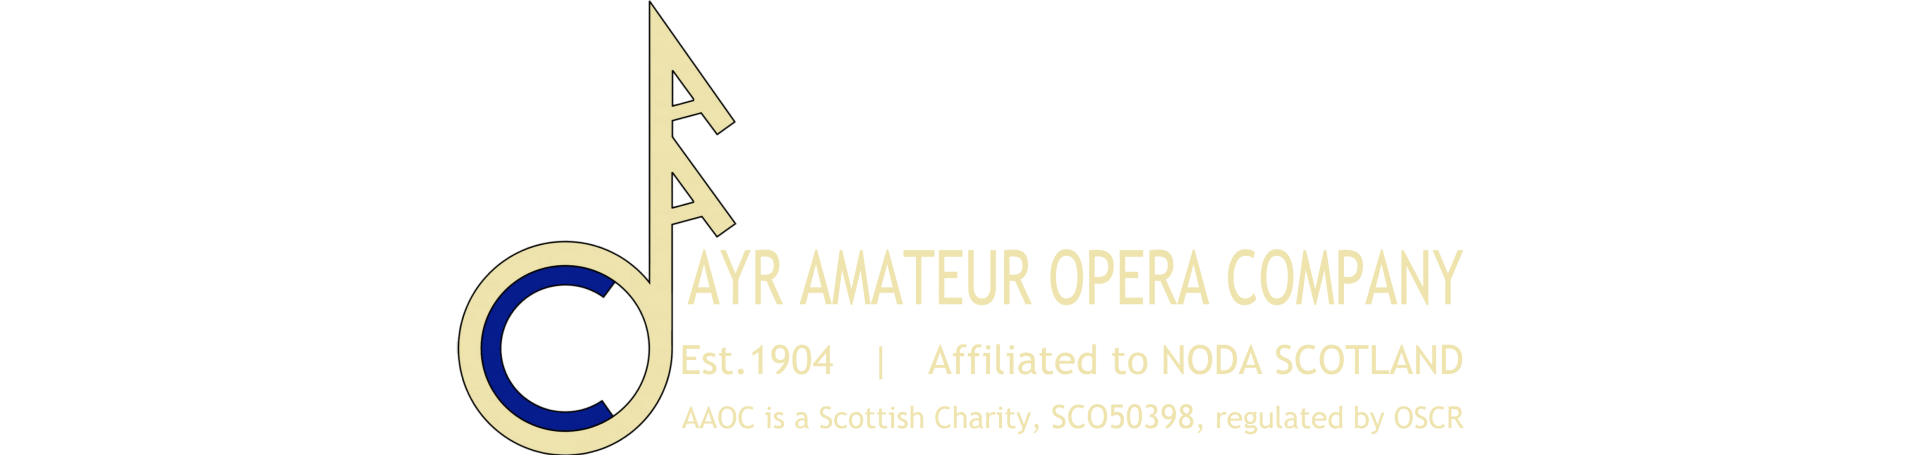 AAOC  |  Ayr Amateur Opera Company